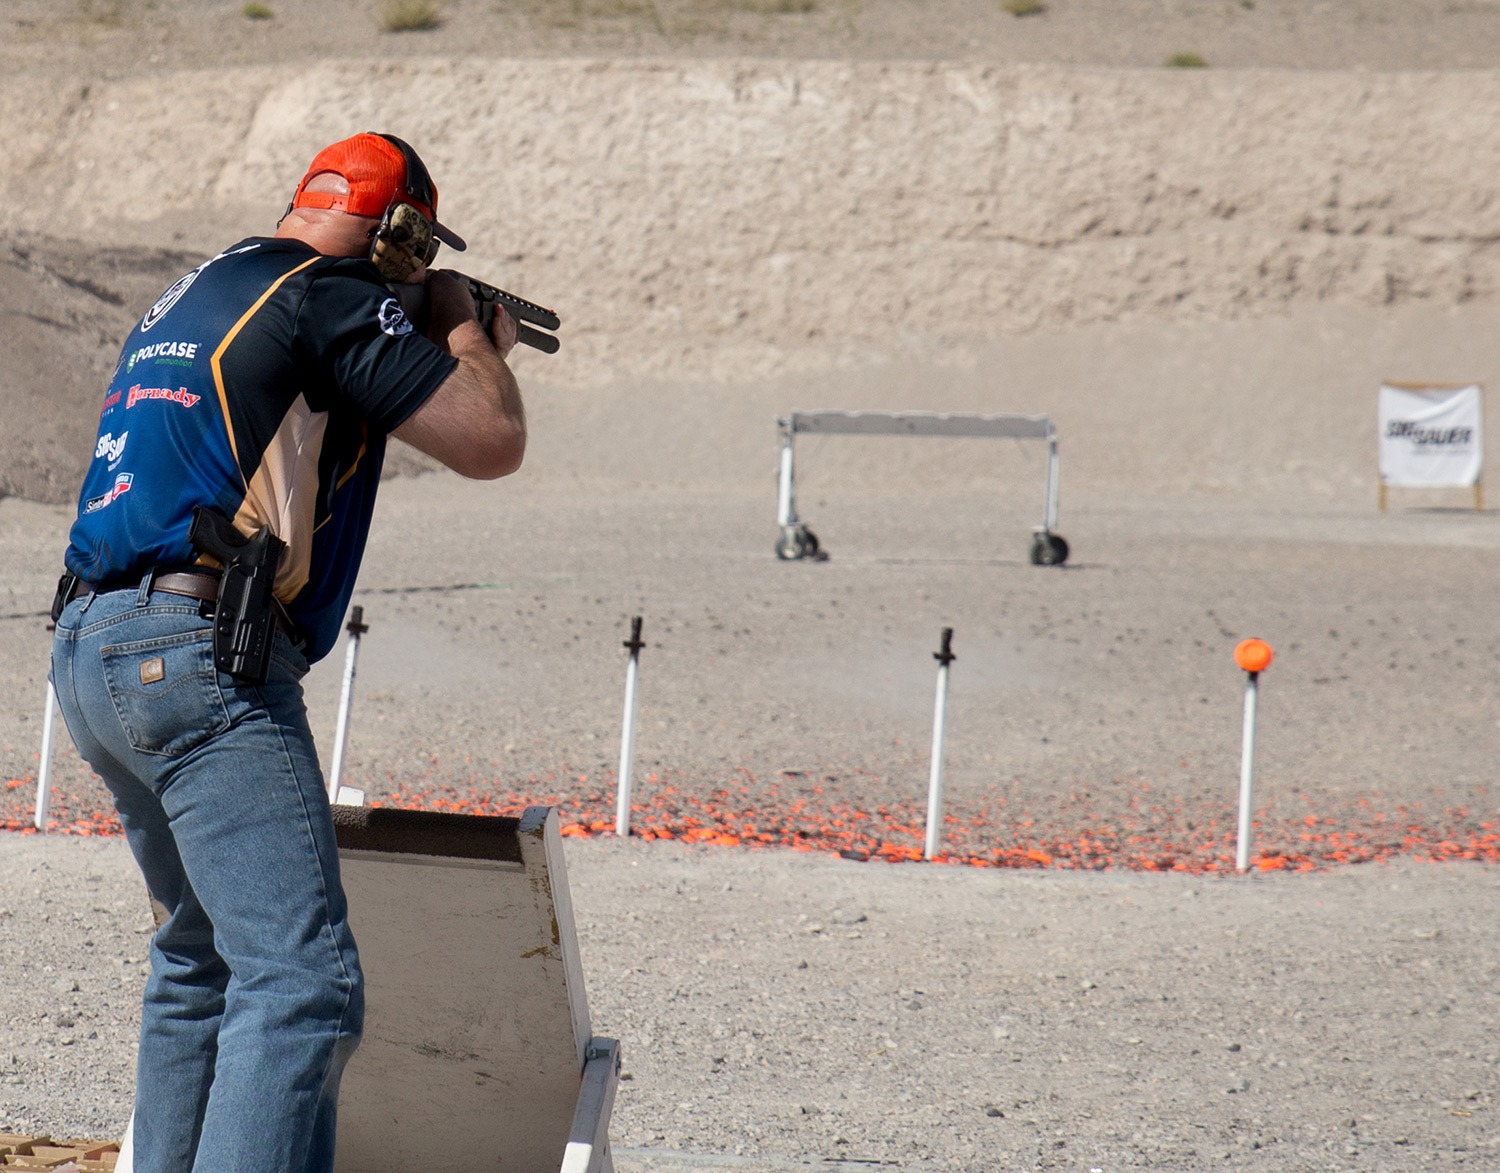 Man Shooting Shotgun at range target